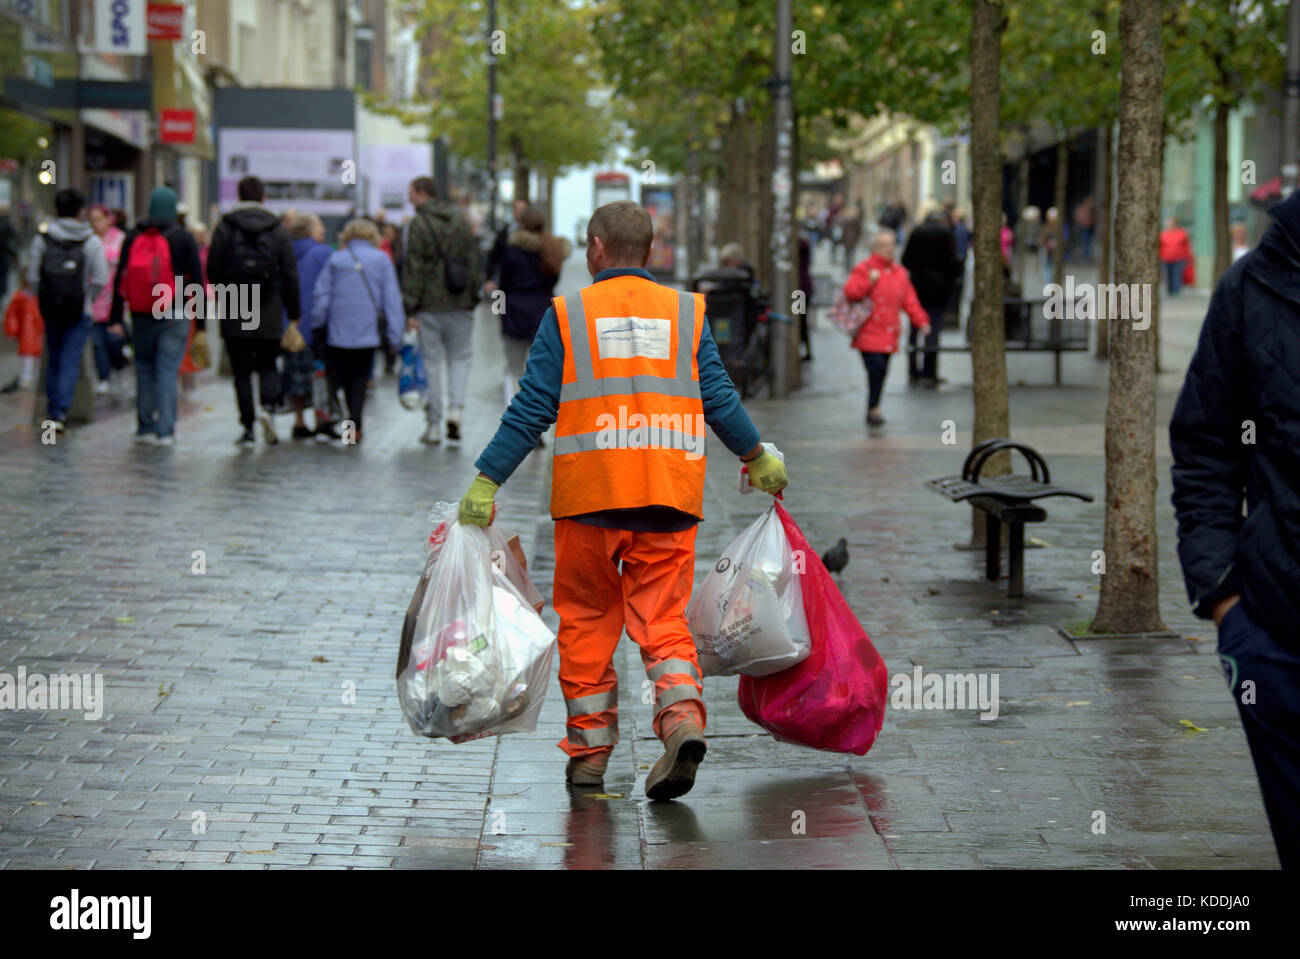 Bin l'homme refuser collector street sweeper avec des sacs d'ordures en marchant dans la rue vu de derrière Banque D'Images